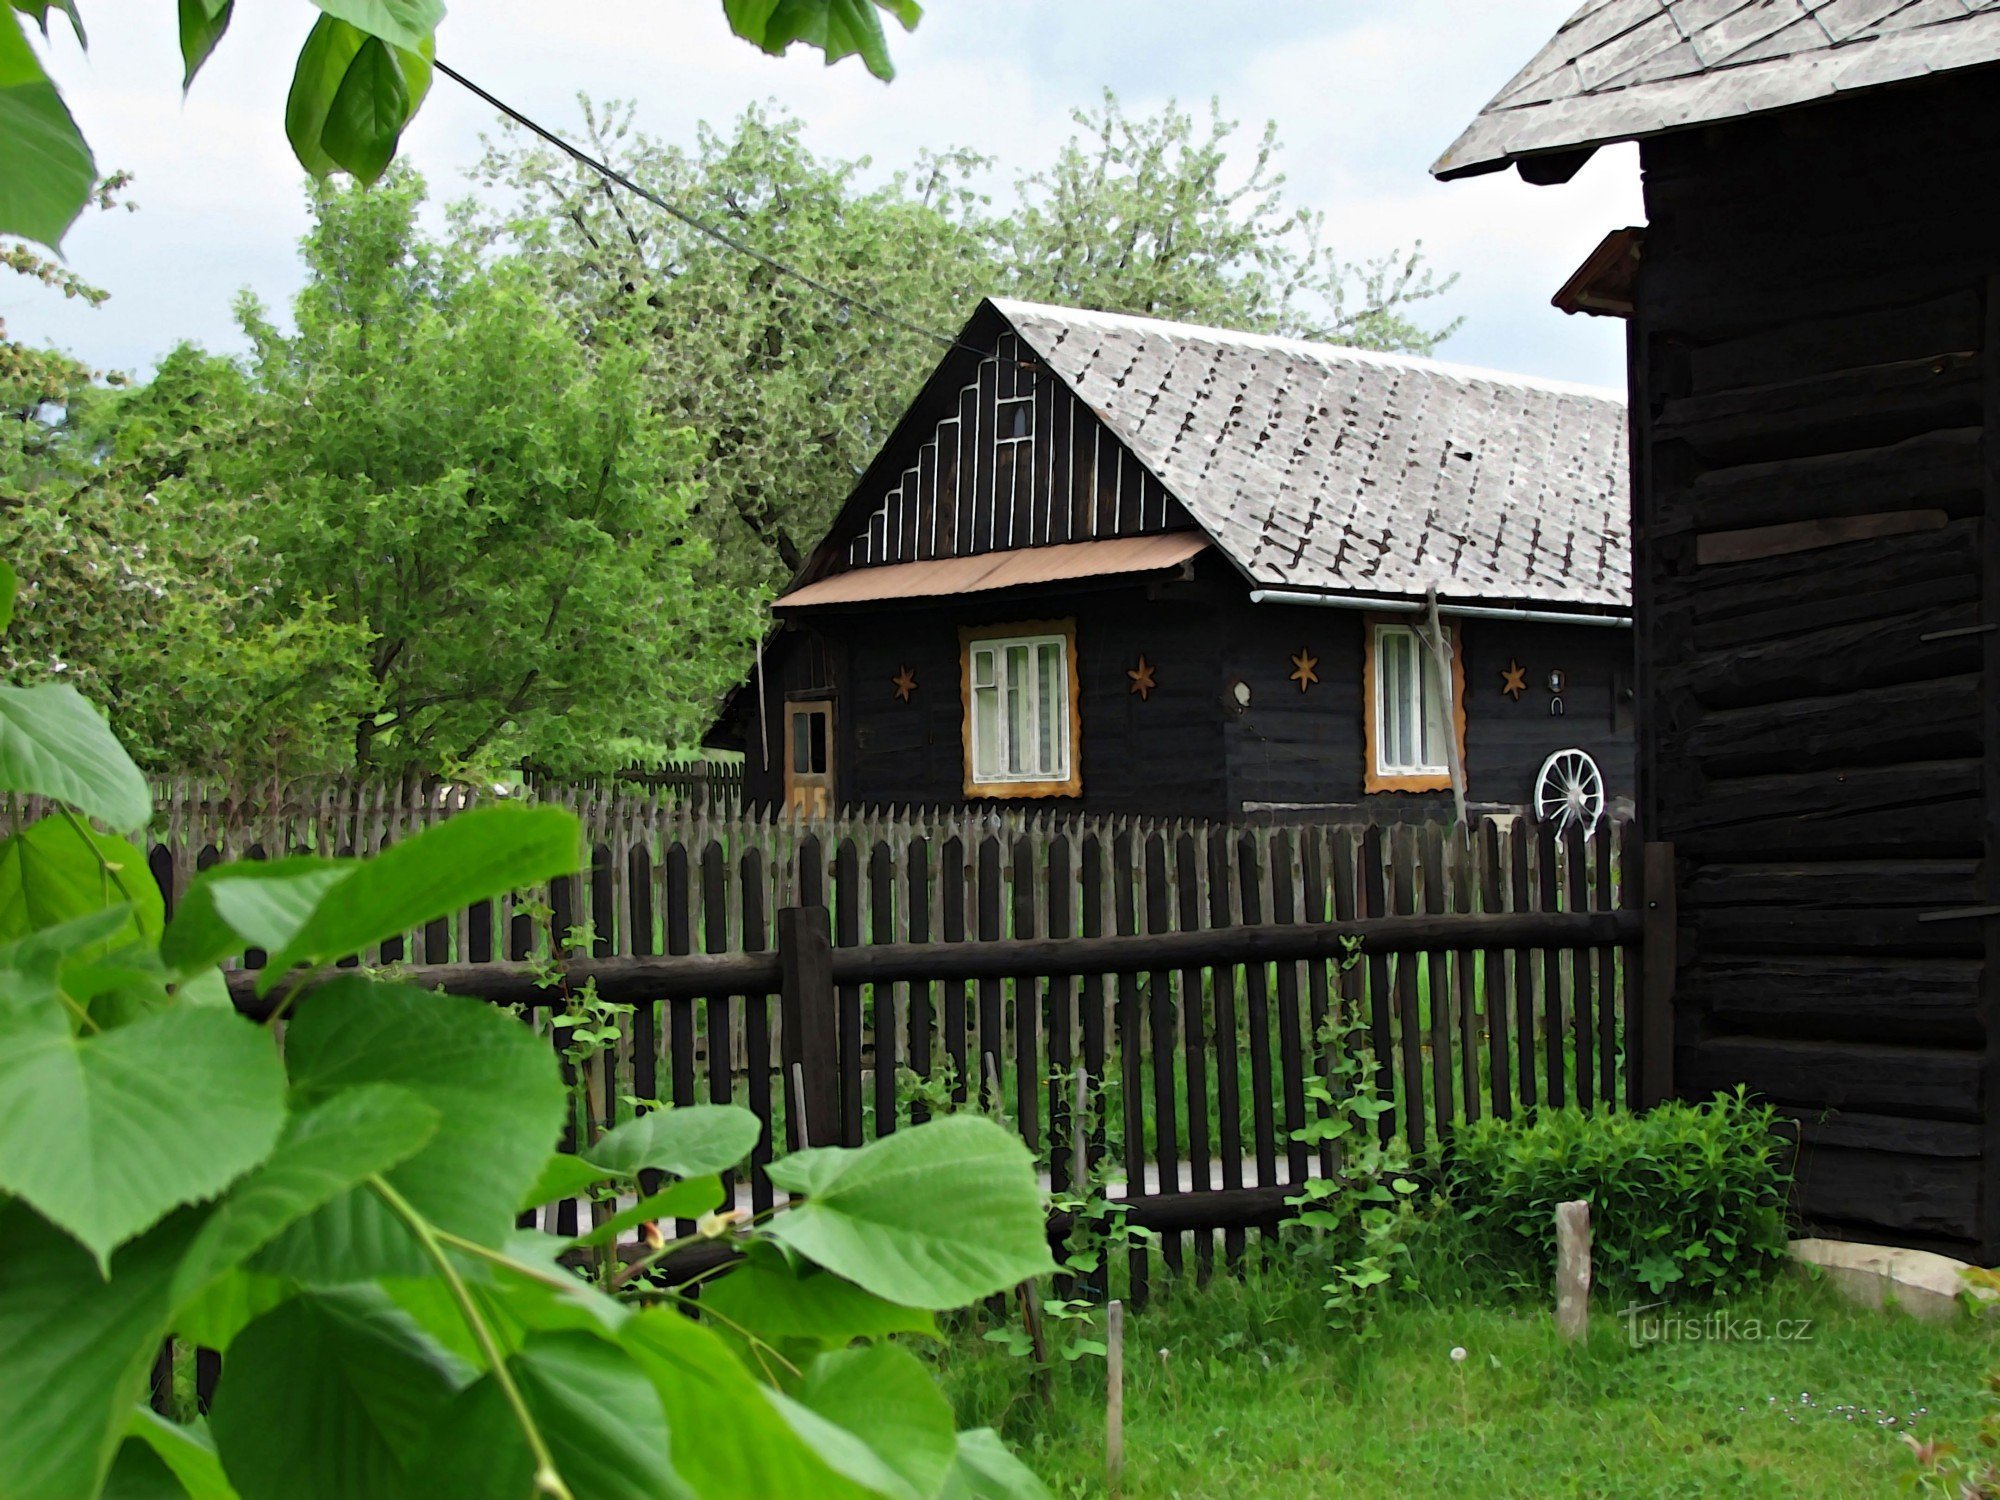 Una passeggiata attraverso il villaggio valacco di Pozděchov